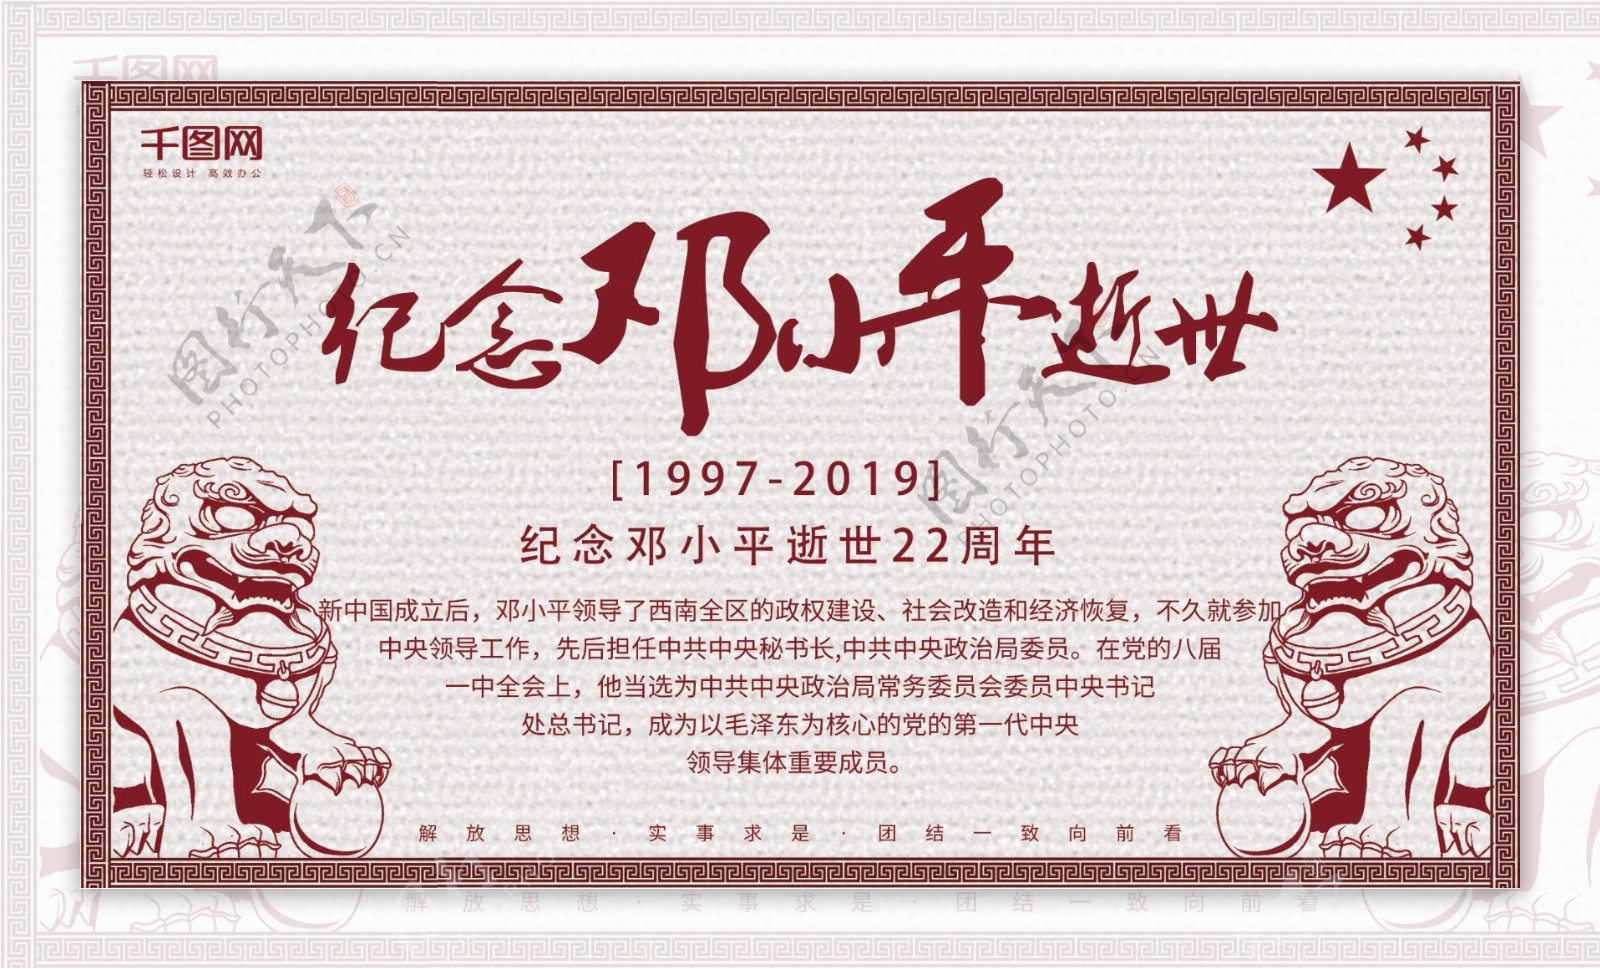 原创简约创意纪念邓小平逝世22周年展板